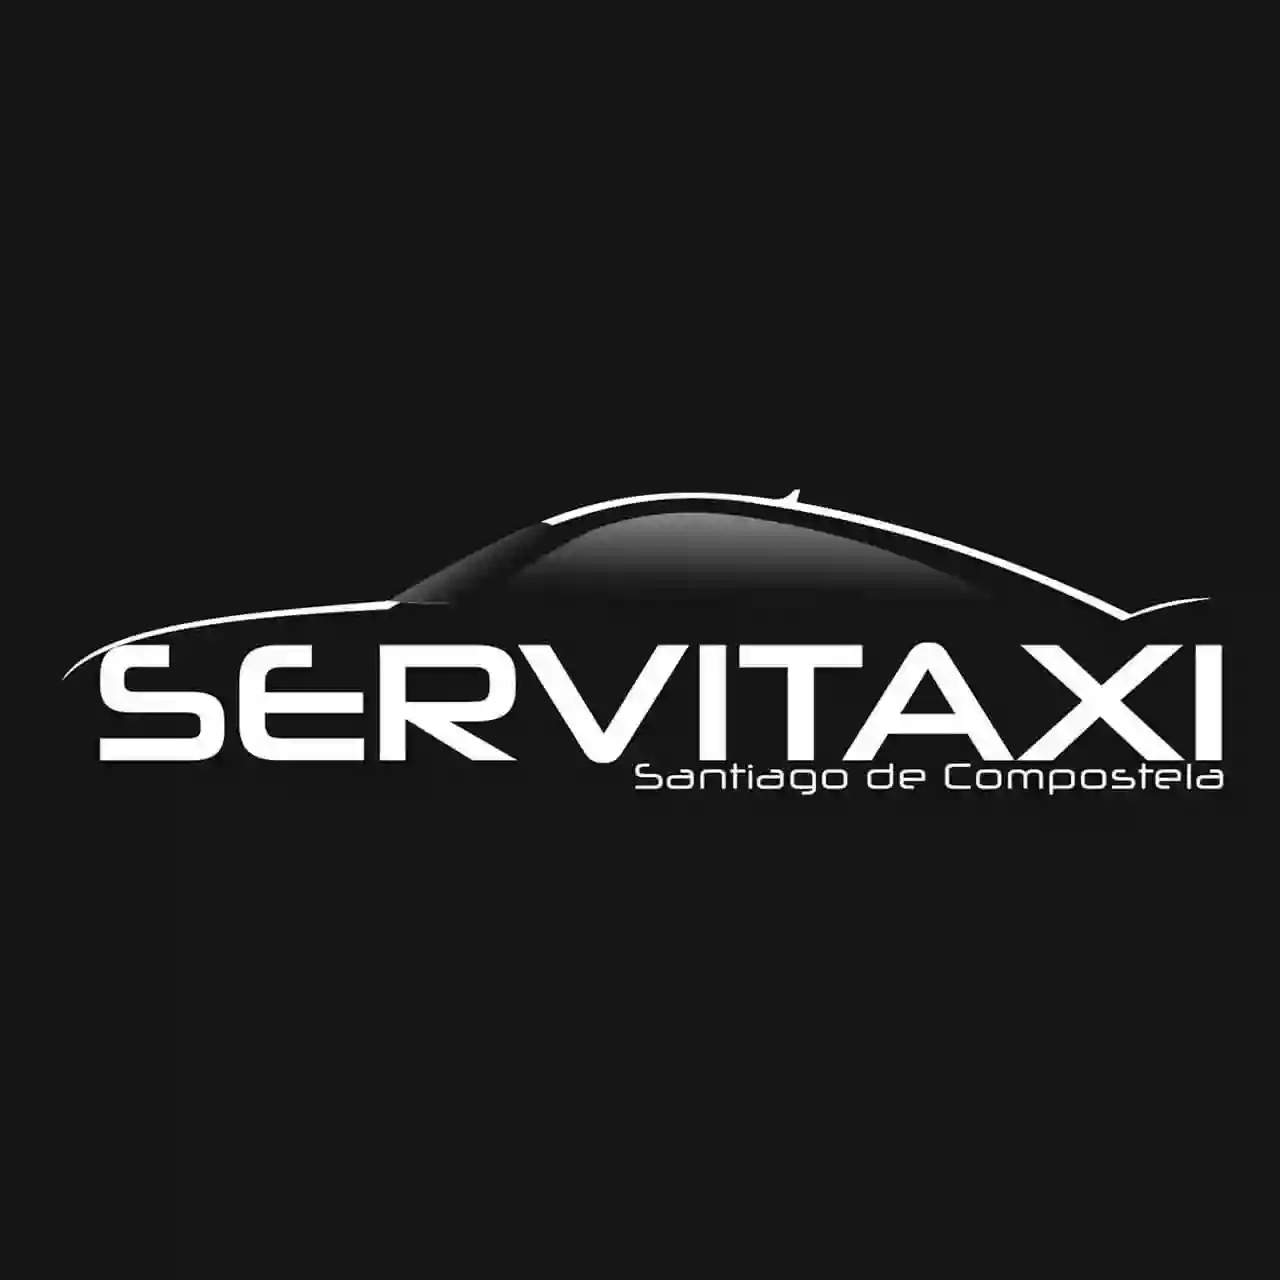 Taxi Servitaxi Santiago